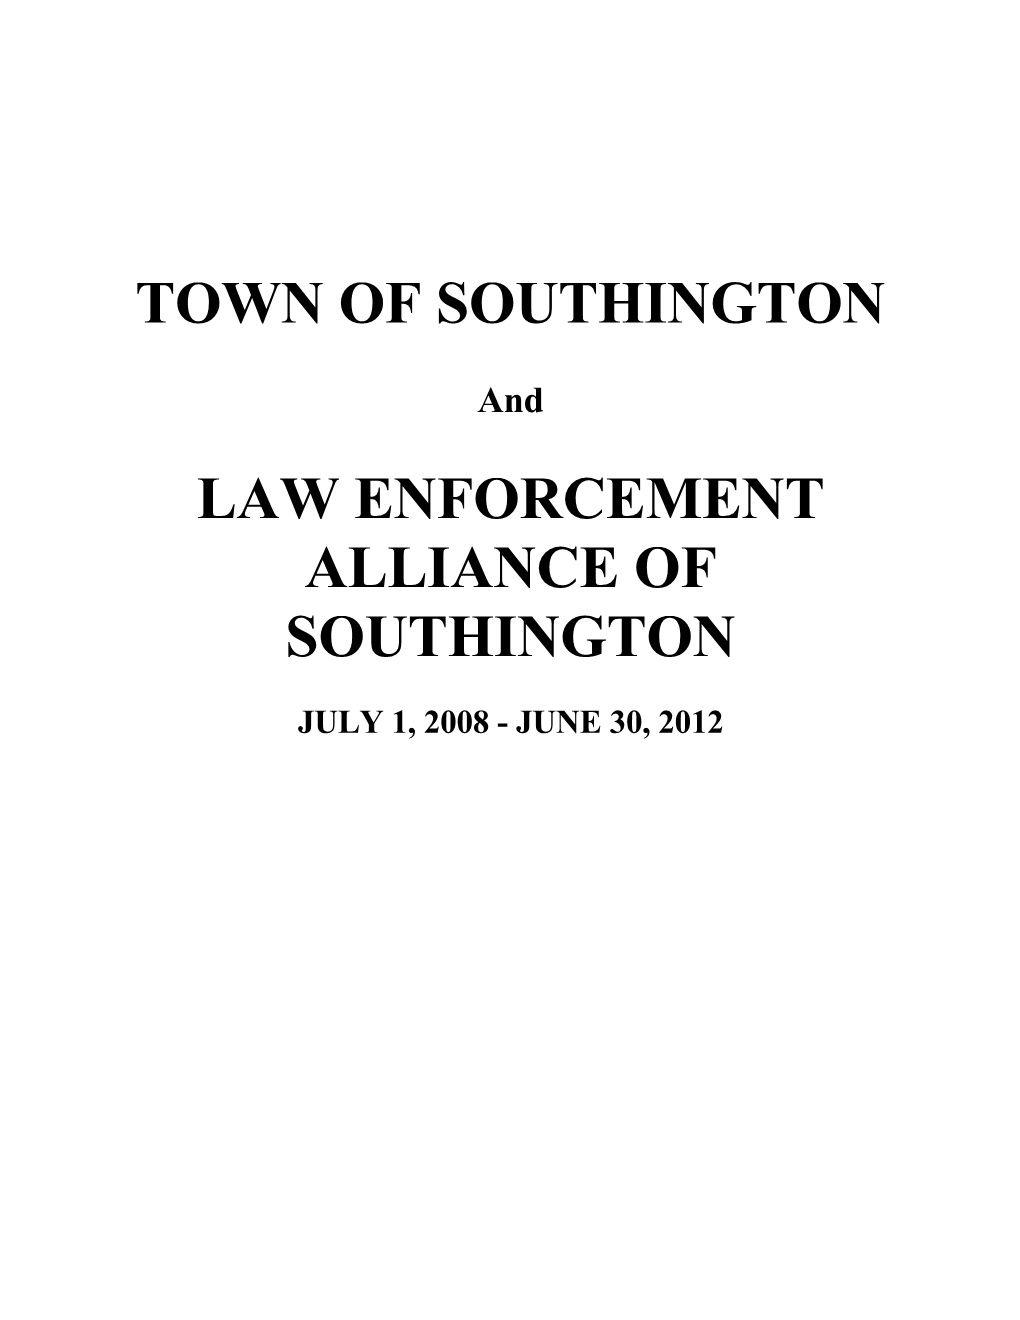 Law Enforcement Alliance of Southington